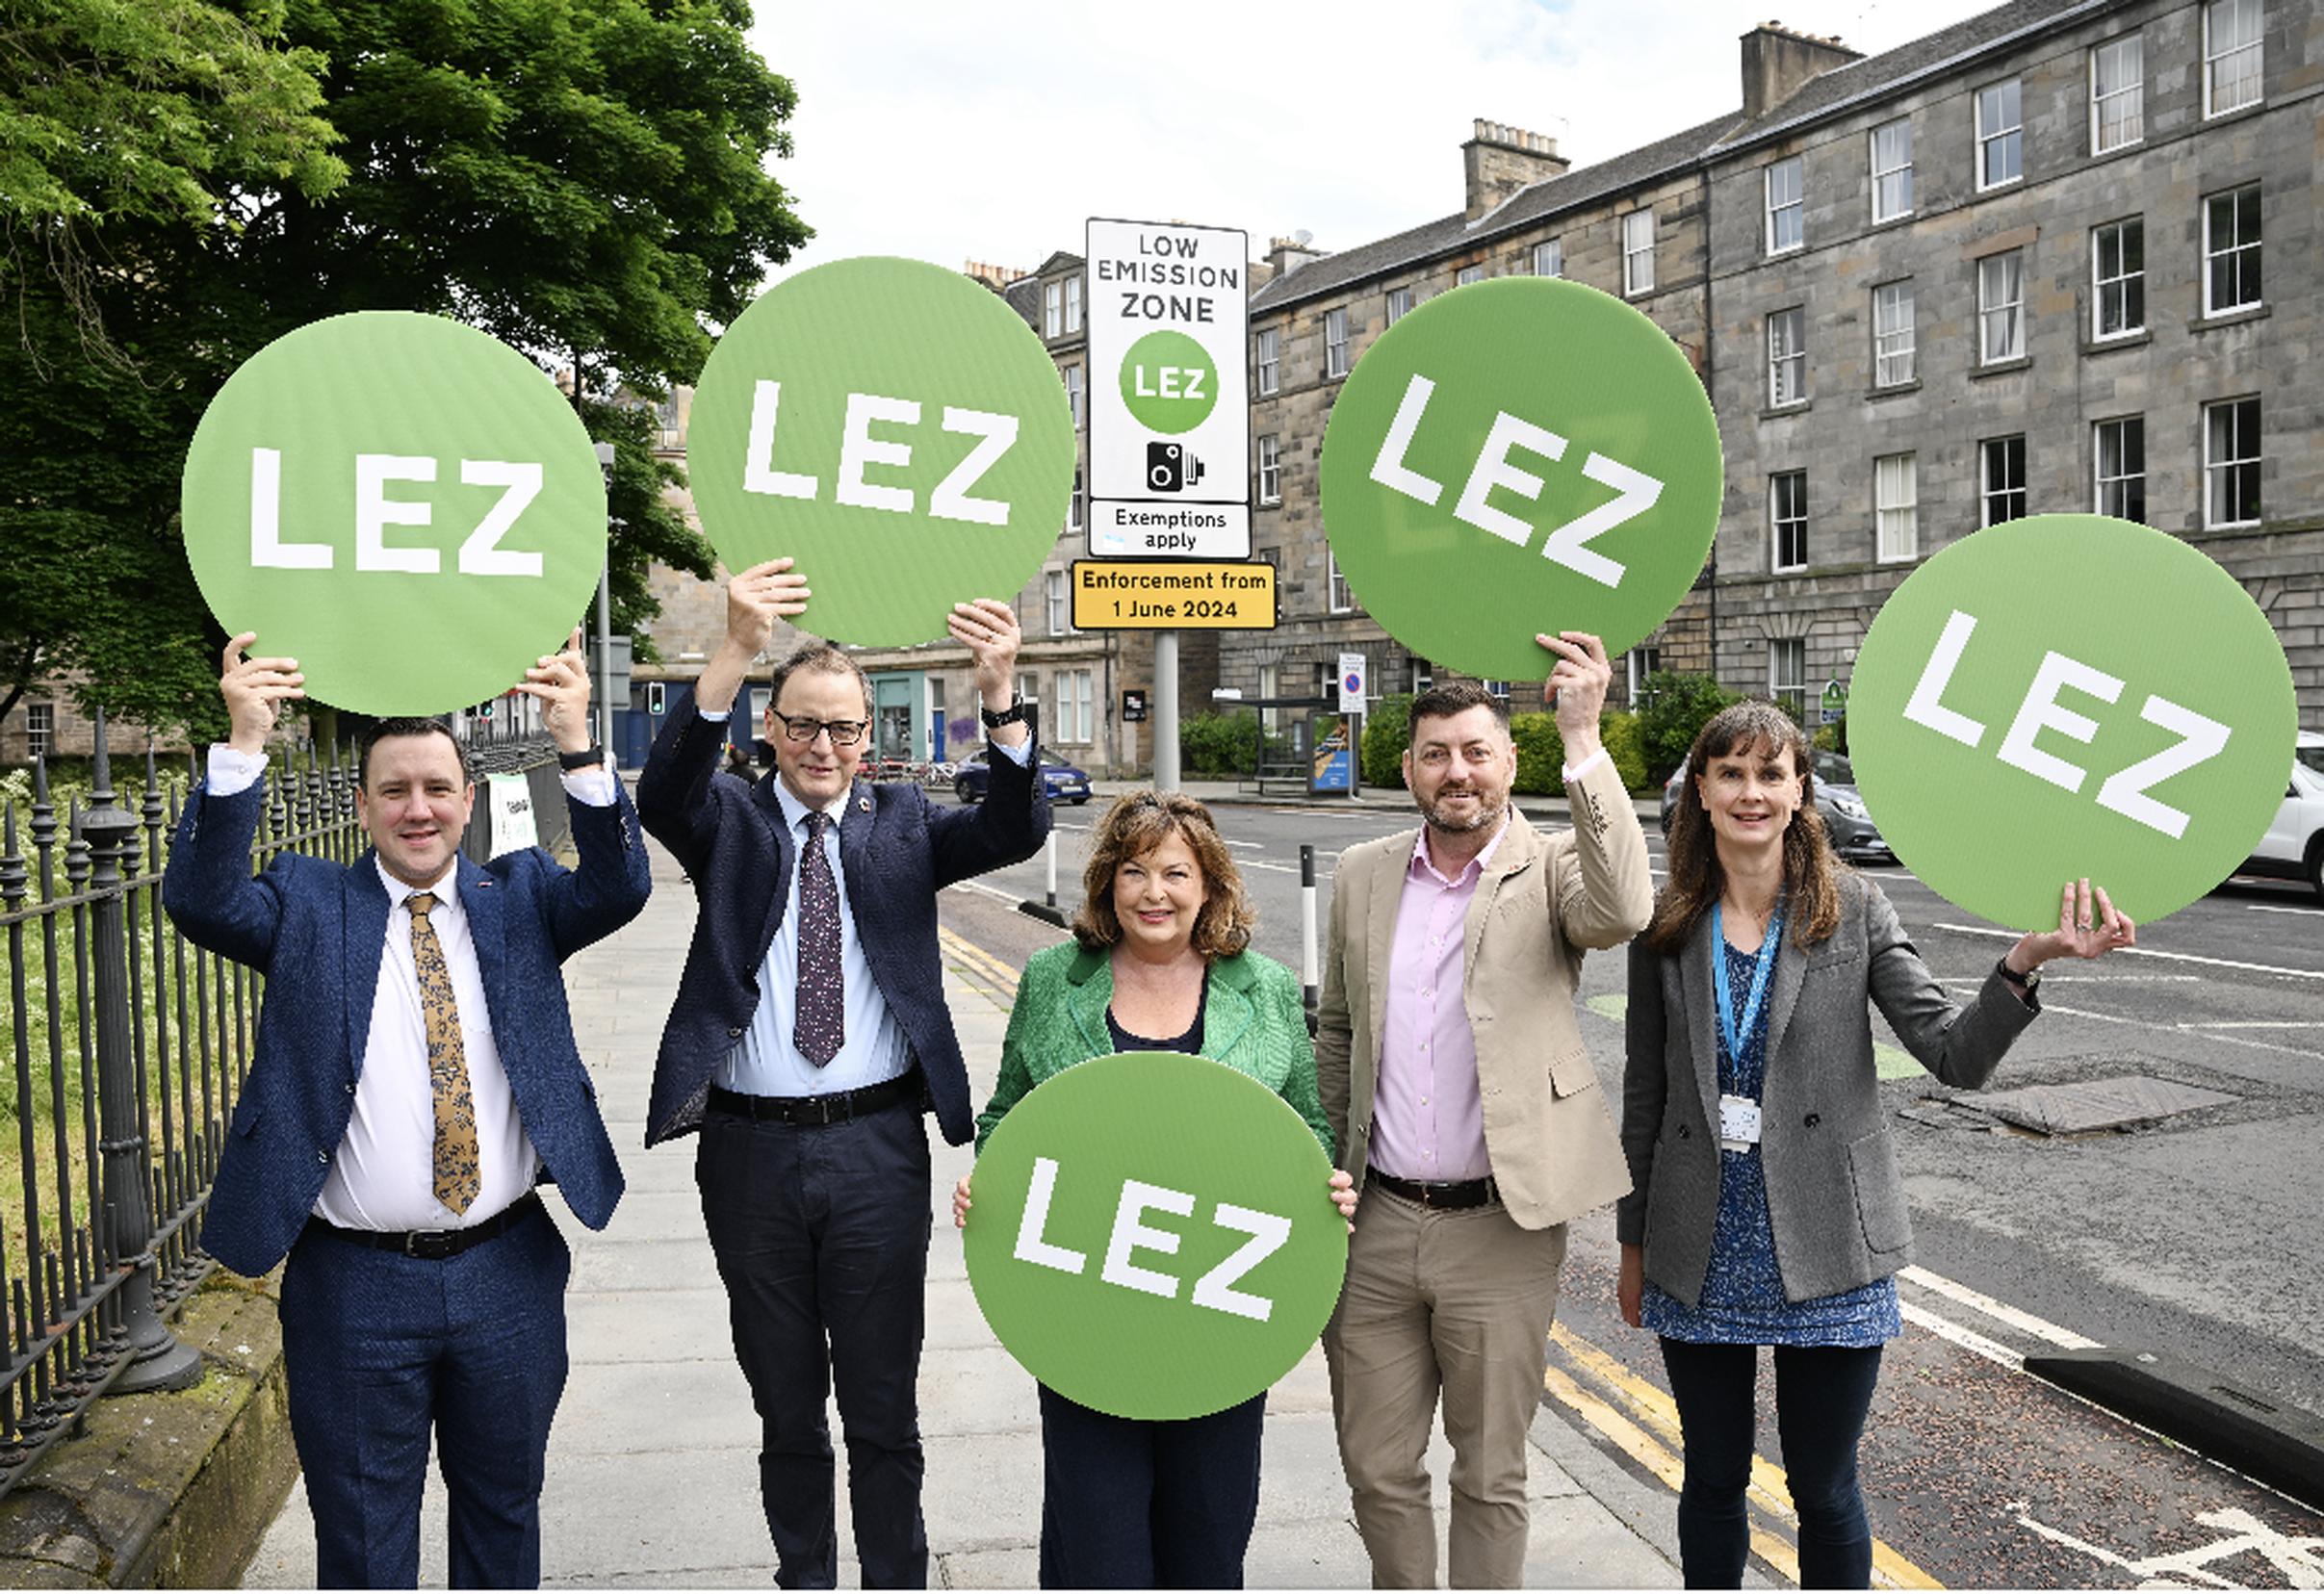 Launching enforcement of the Edinburgh LEZ